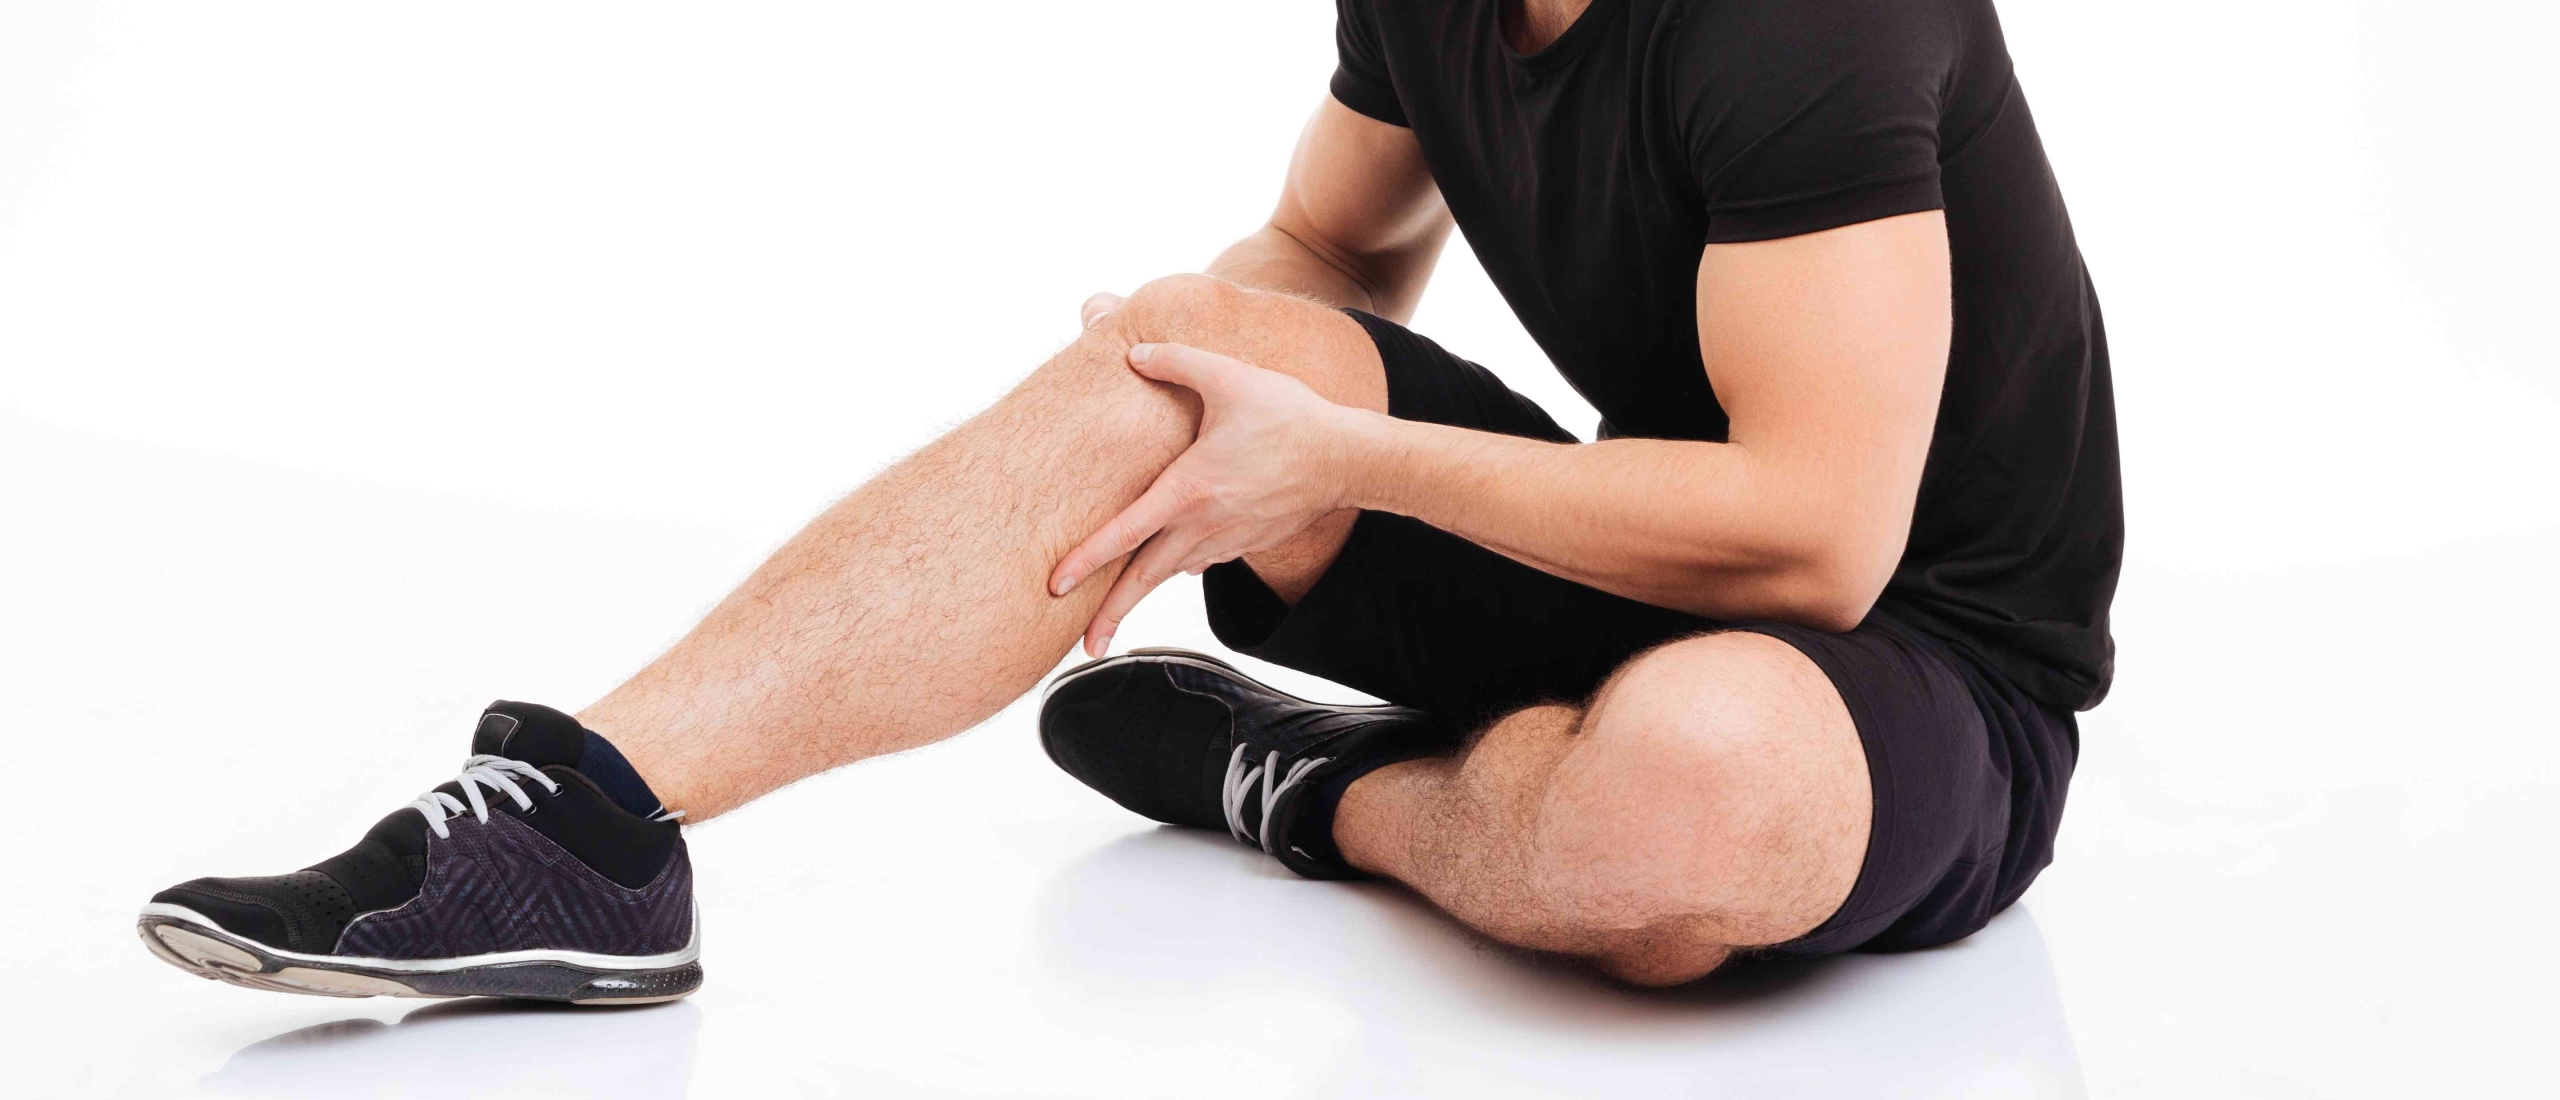 Wat veroorzaakt de pijn in de knie bij het patellofemoraal pijnsyndroom?